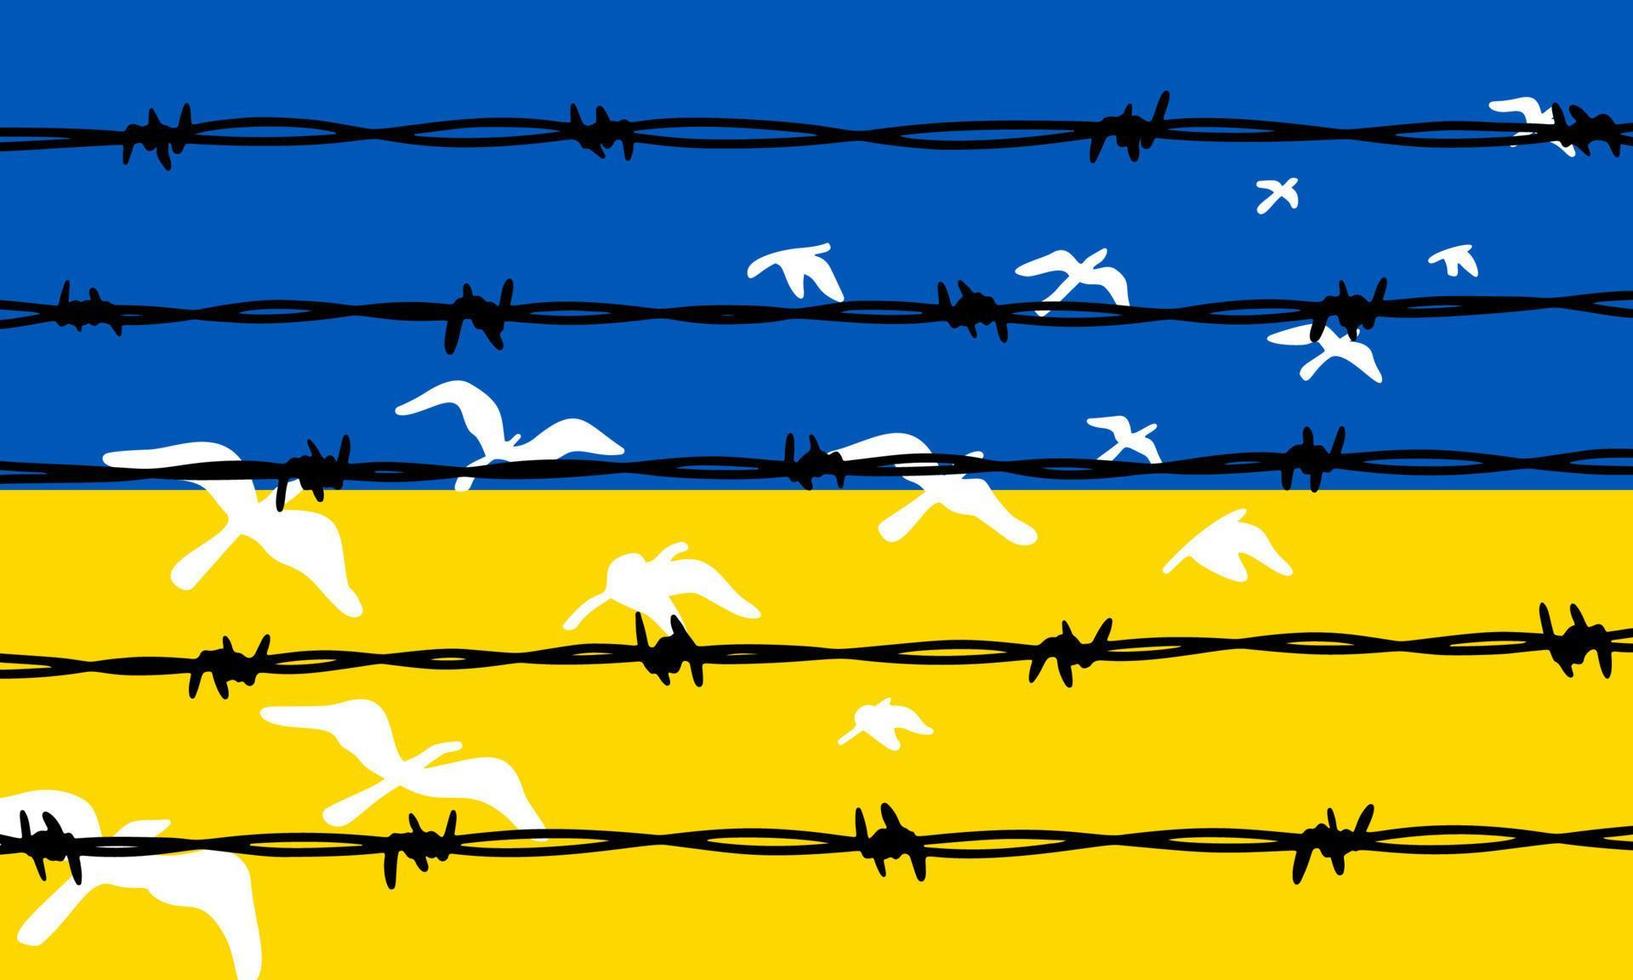 fliegende Vögel in ukrainischen blauen und gelben Flaggenfarben, die Stacheldrahtzaun entkommen. Freiheitskonzept. hand gezeichnete vektorillustration. bete für die Ukraine vektor